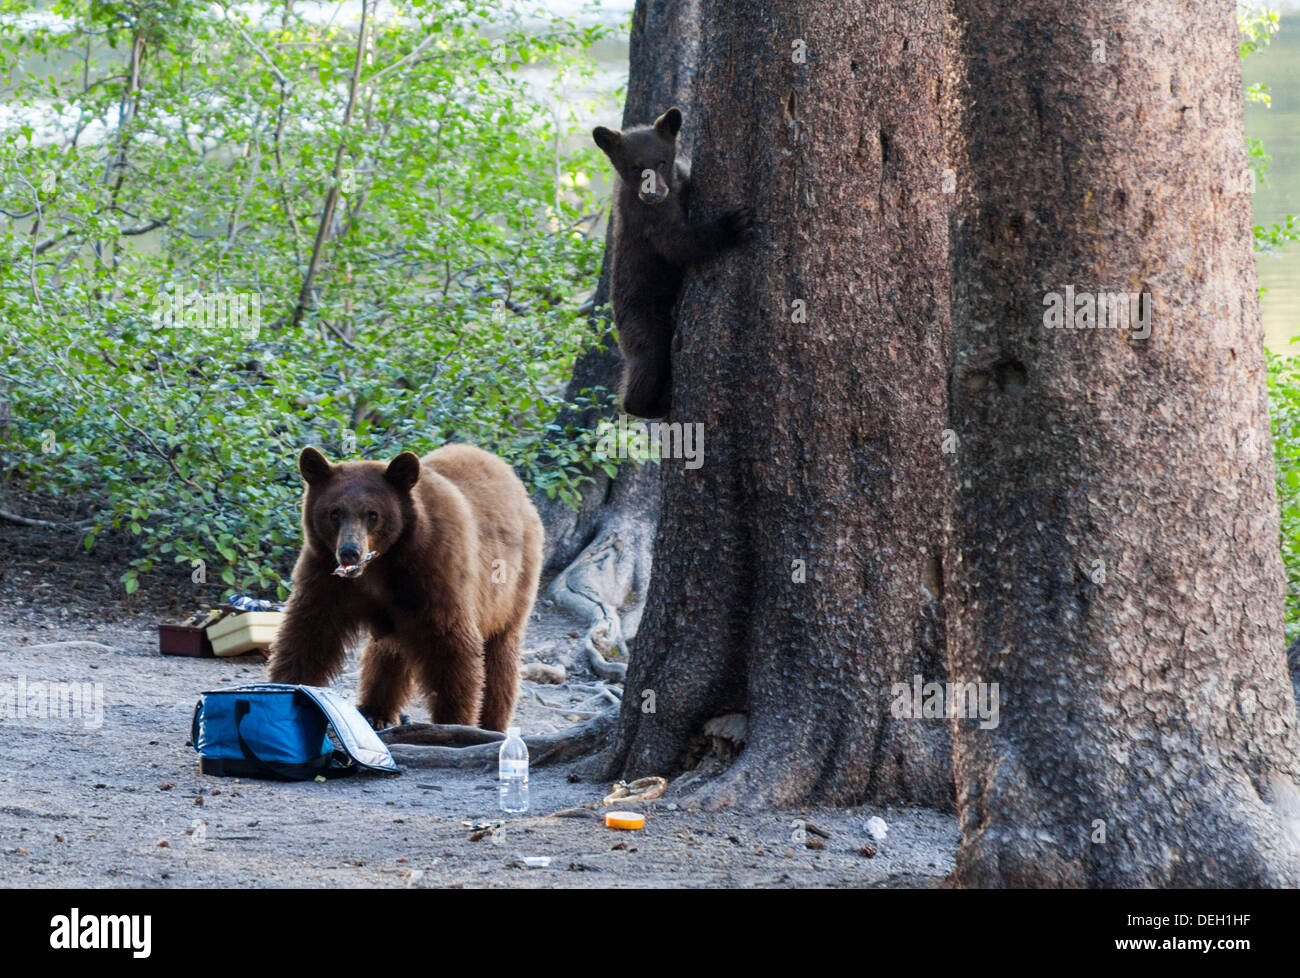 Schwarzer Bär Snacks Essen in Kühler gefunden, während junge Baum klettert Stockfoto